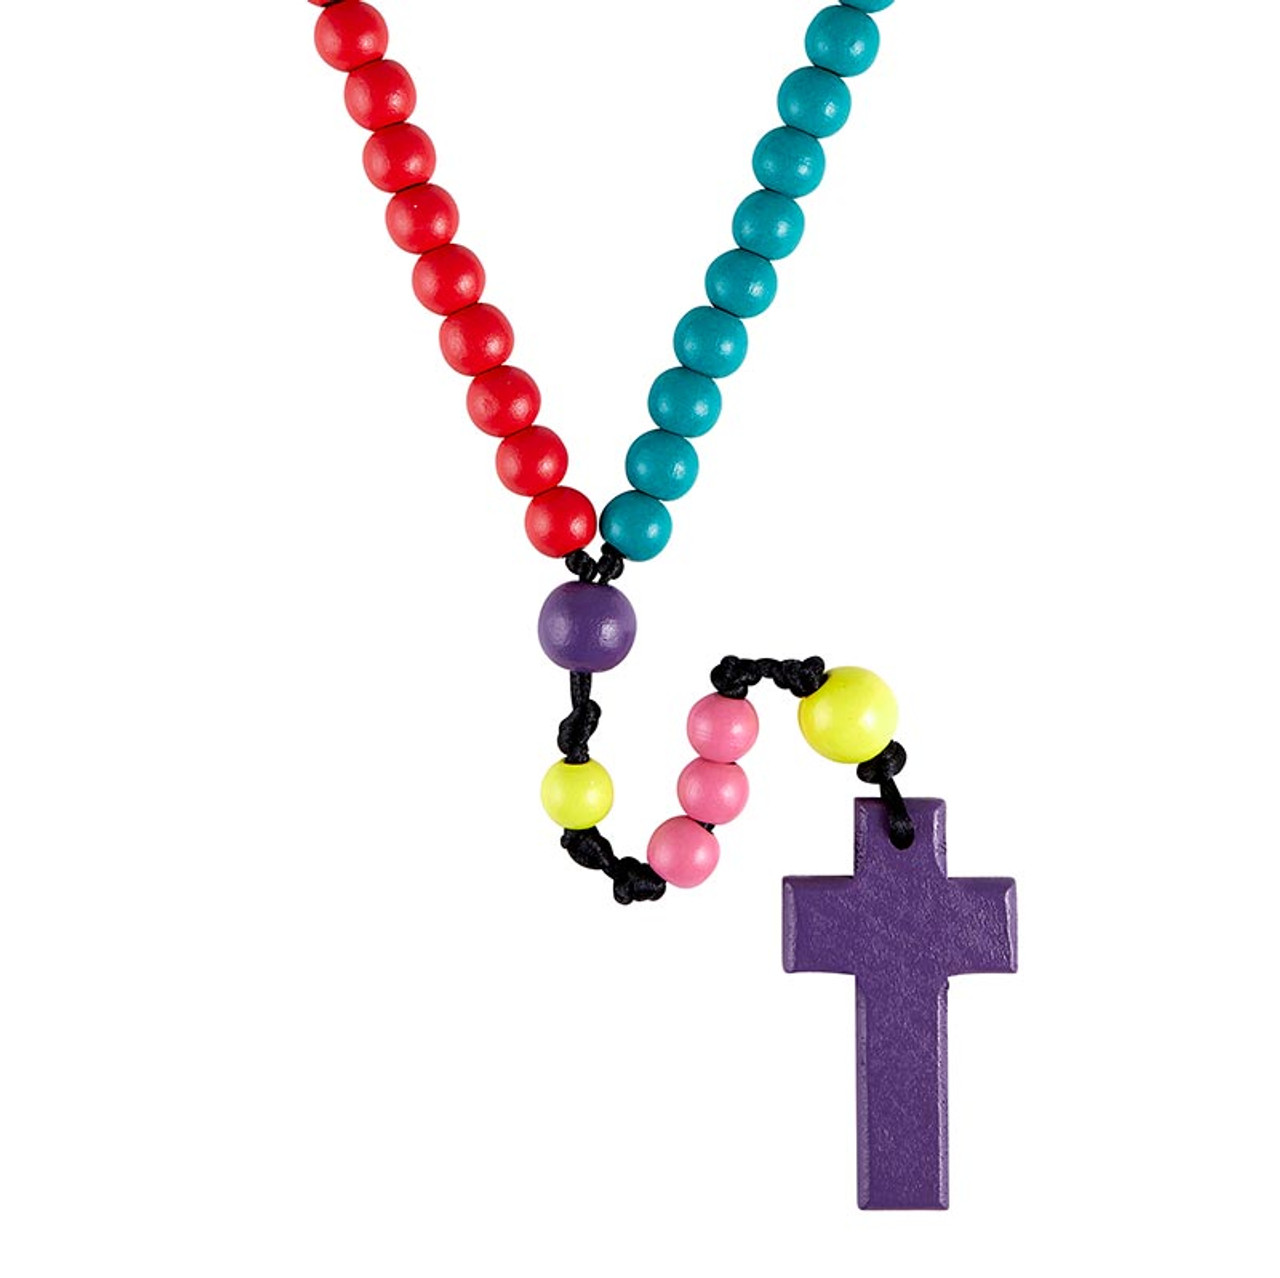 Rosary Kits - Rosary Making - Rosary Supplies - Rosaries - Catholic